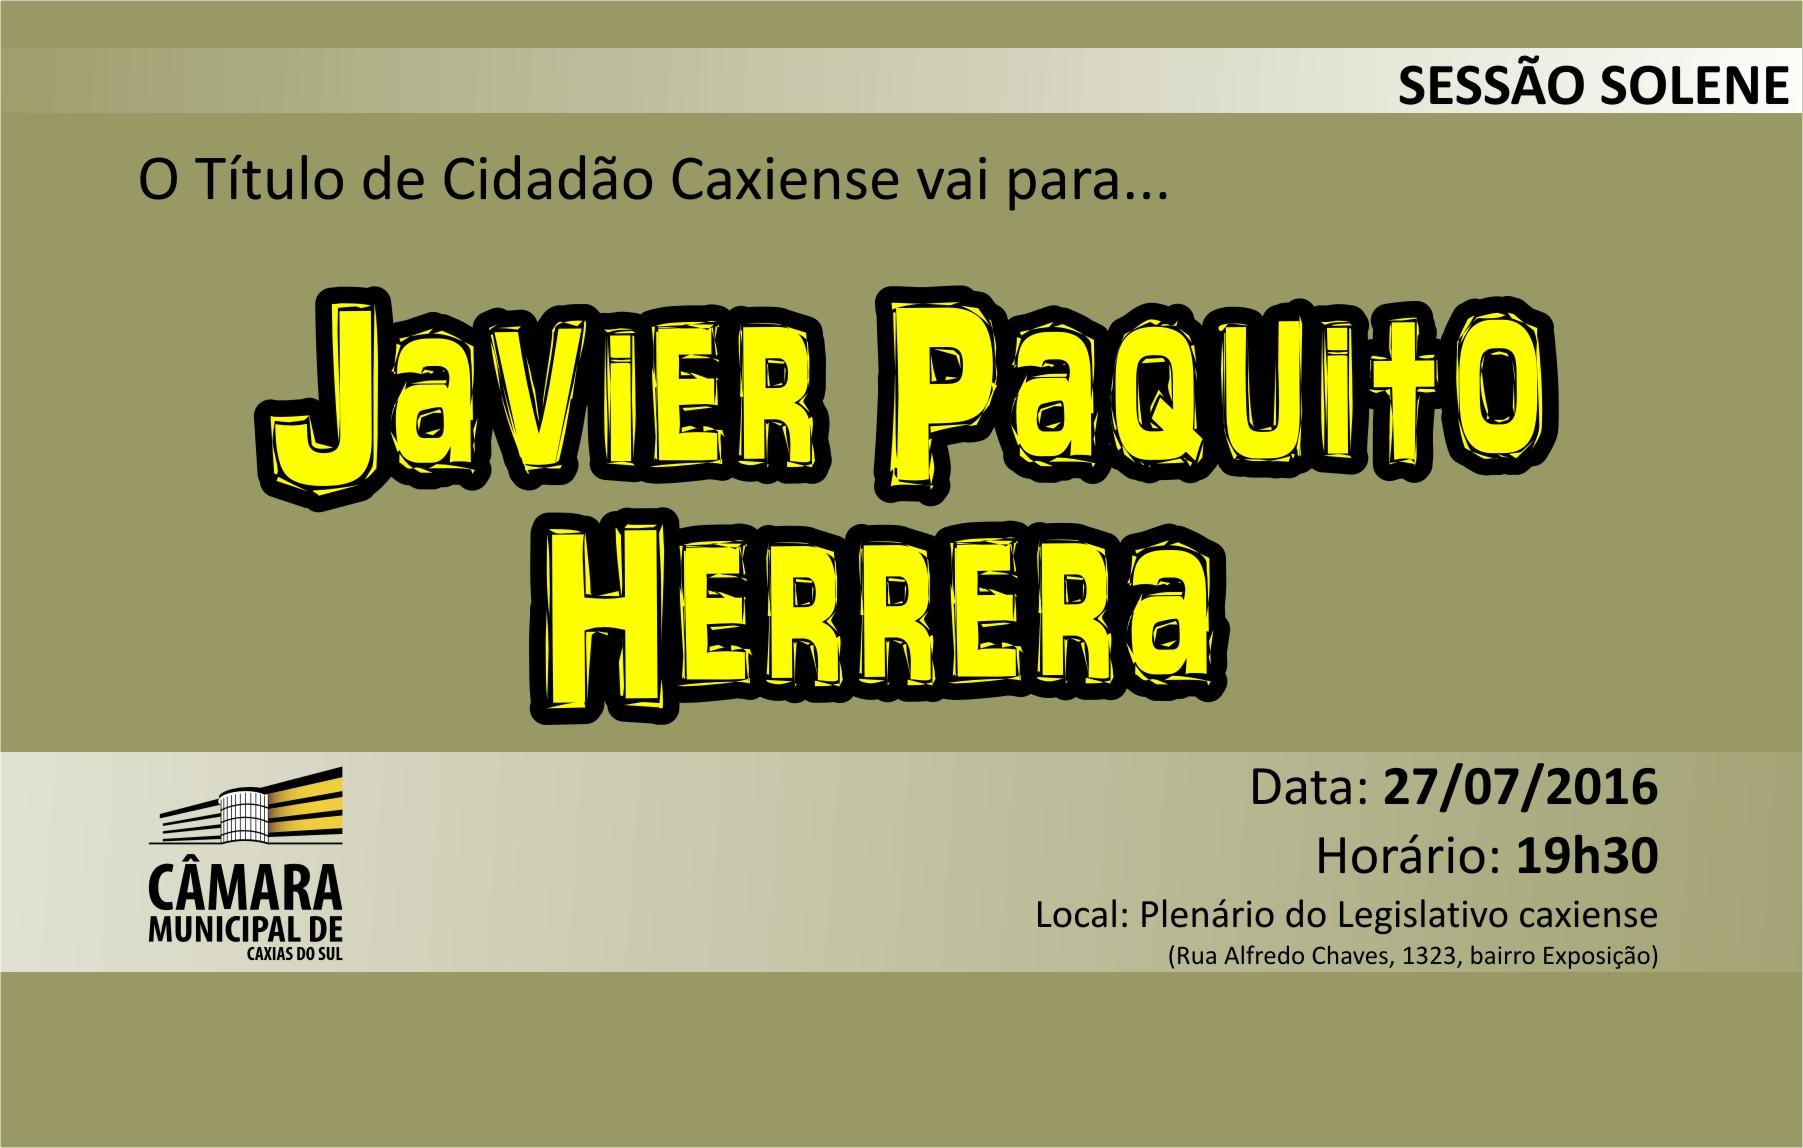 Câmara Municipal agraciará Javier Paquito Herrera com Título de Cidadão Caxiense nesta quarta-feira